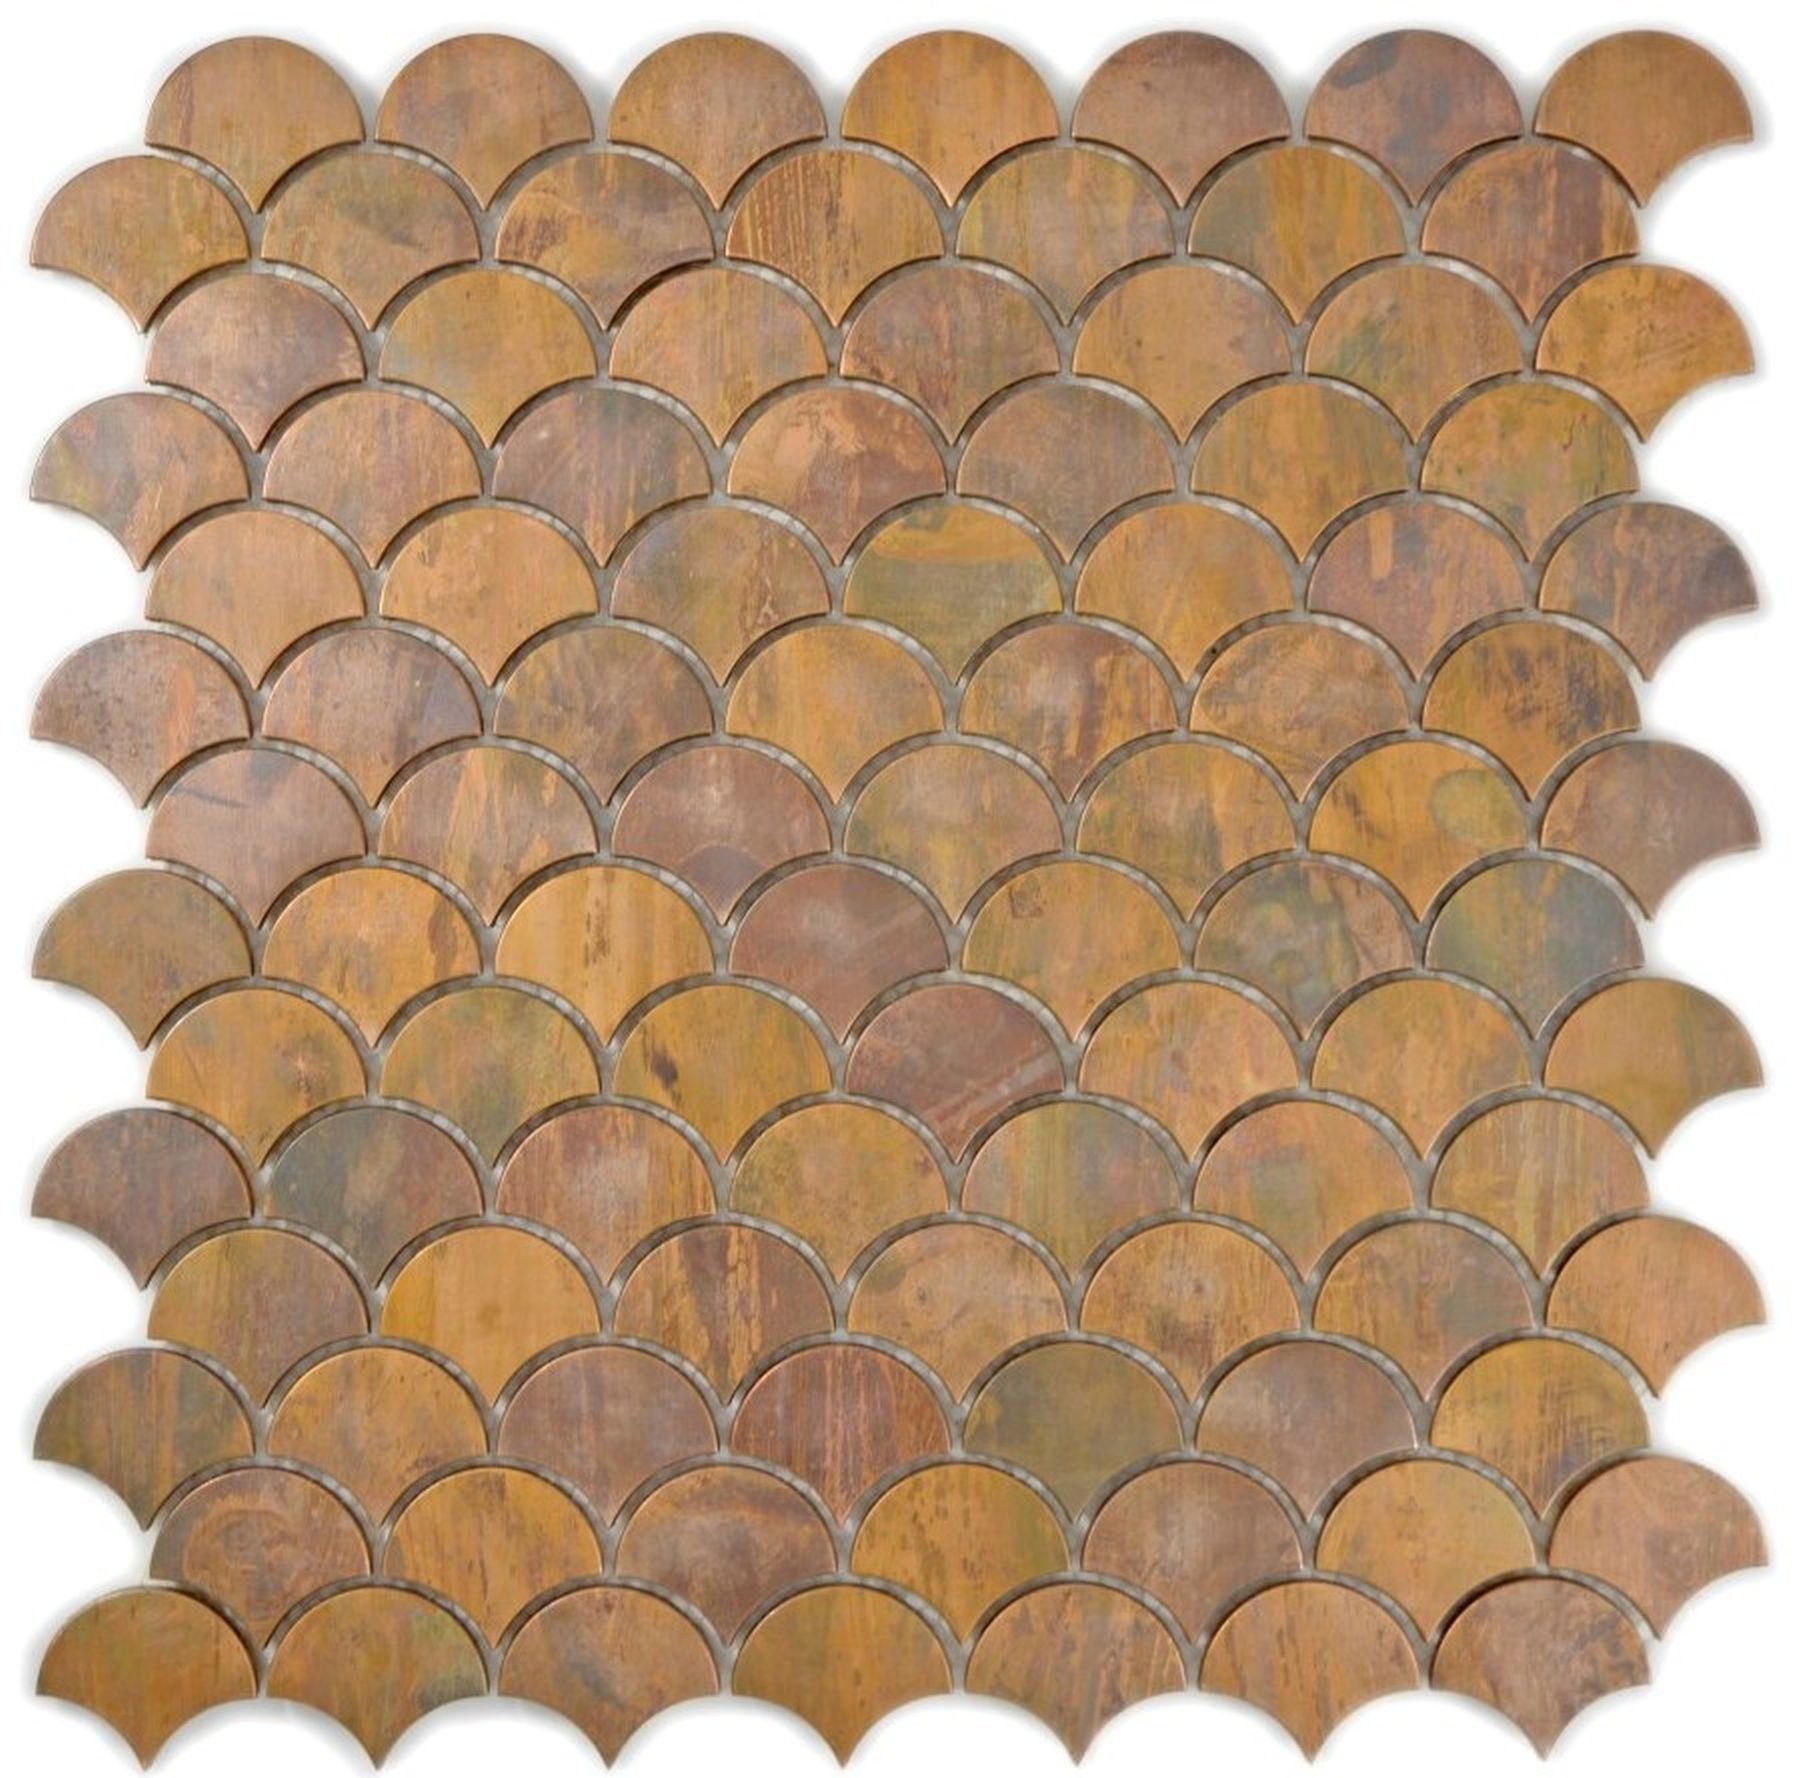 Mosani Mosaikfliesen Kupfermosaik Fliese Fächer Küchenrückwand Fliesenspiegel braun